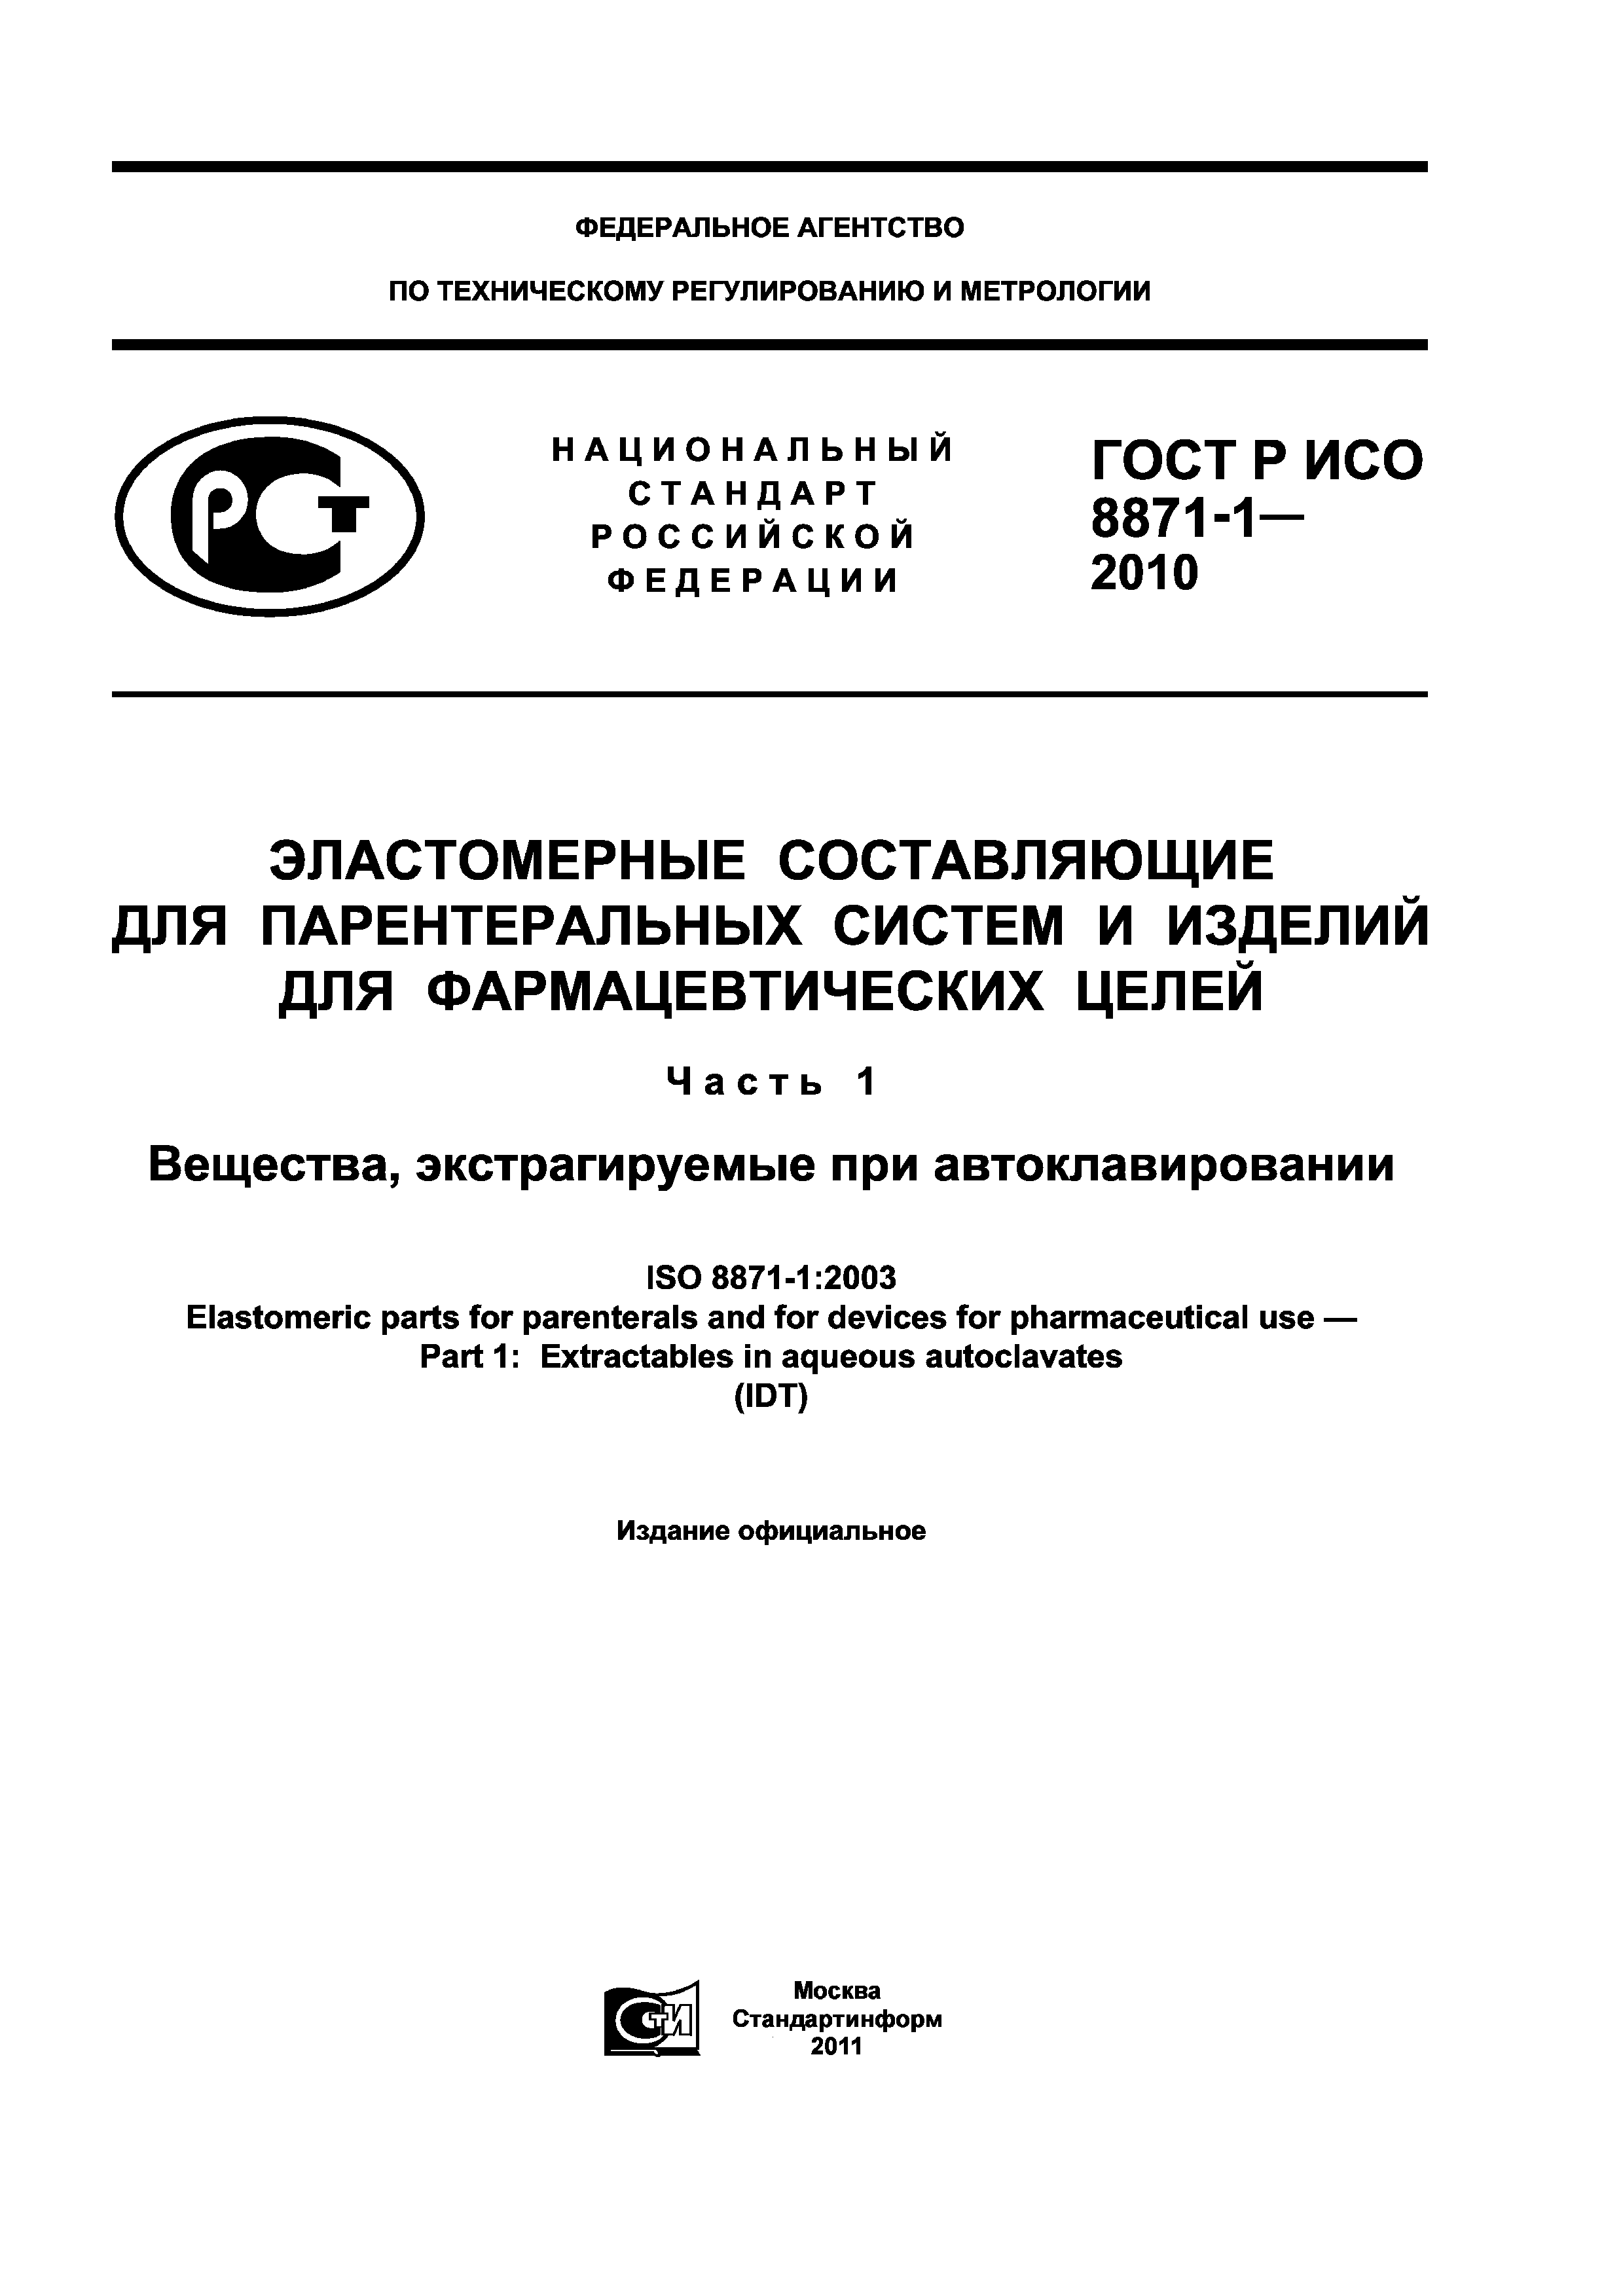 ГОСТ Р ИСО 8871-1-2010